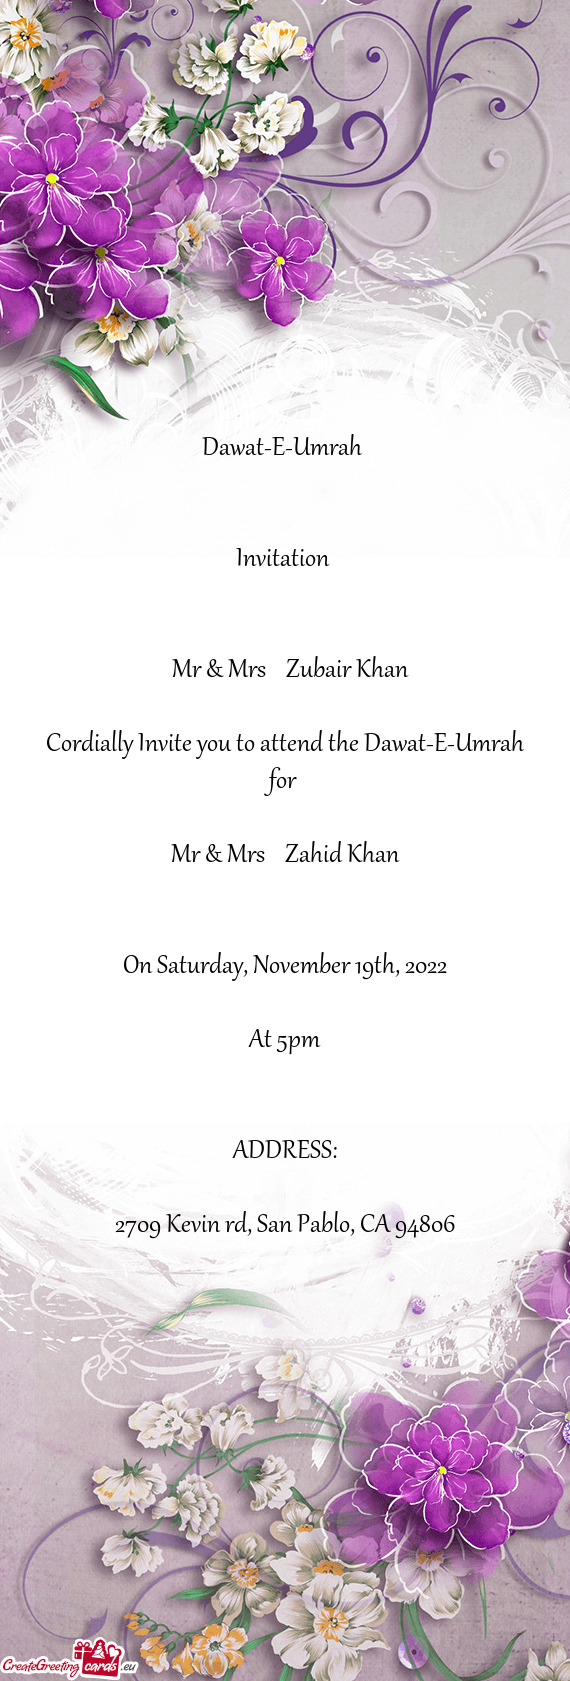 Mr & Mrs Zubair Khan